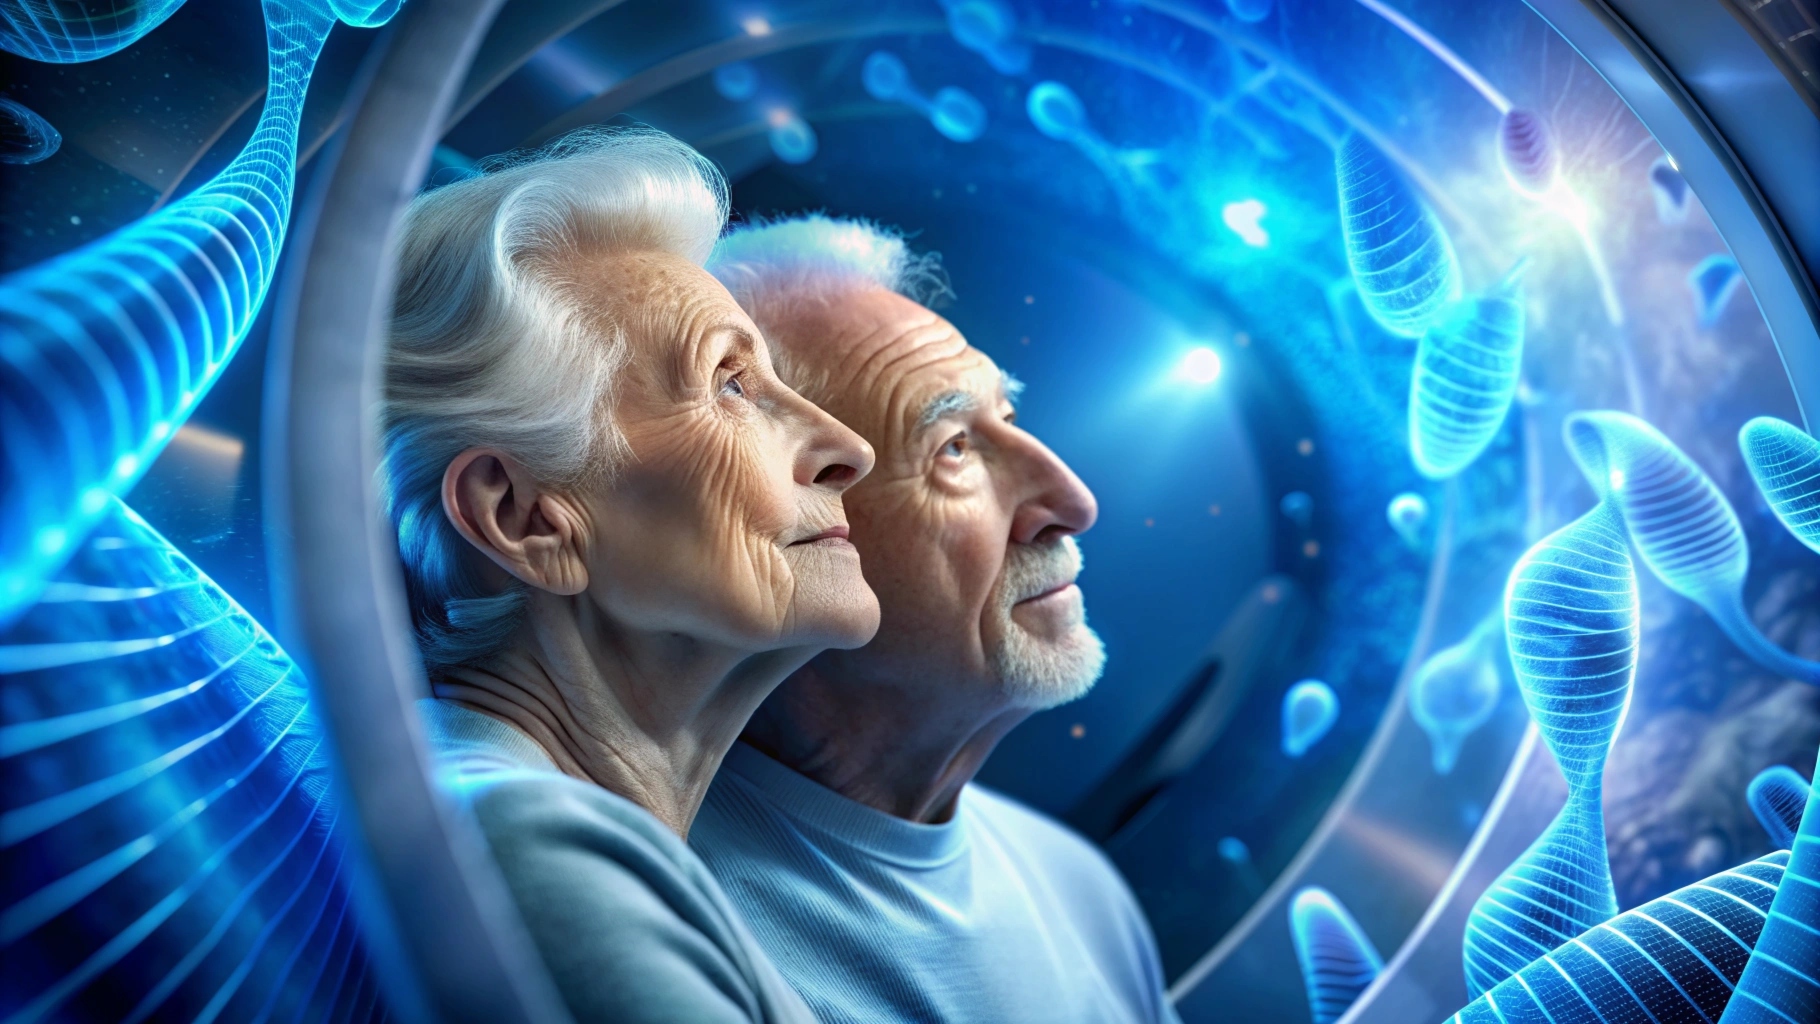 Moderní cesta ke zpomalení stárnutí: Hyperbarická kyslíková terapie a její vliv na délku telomer